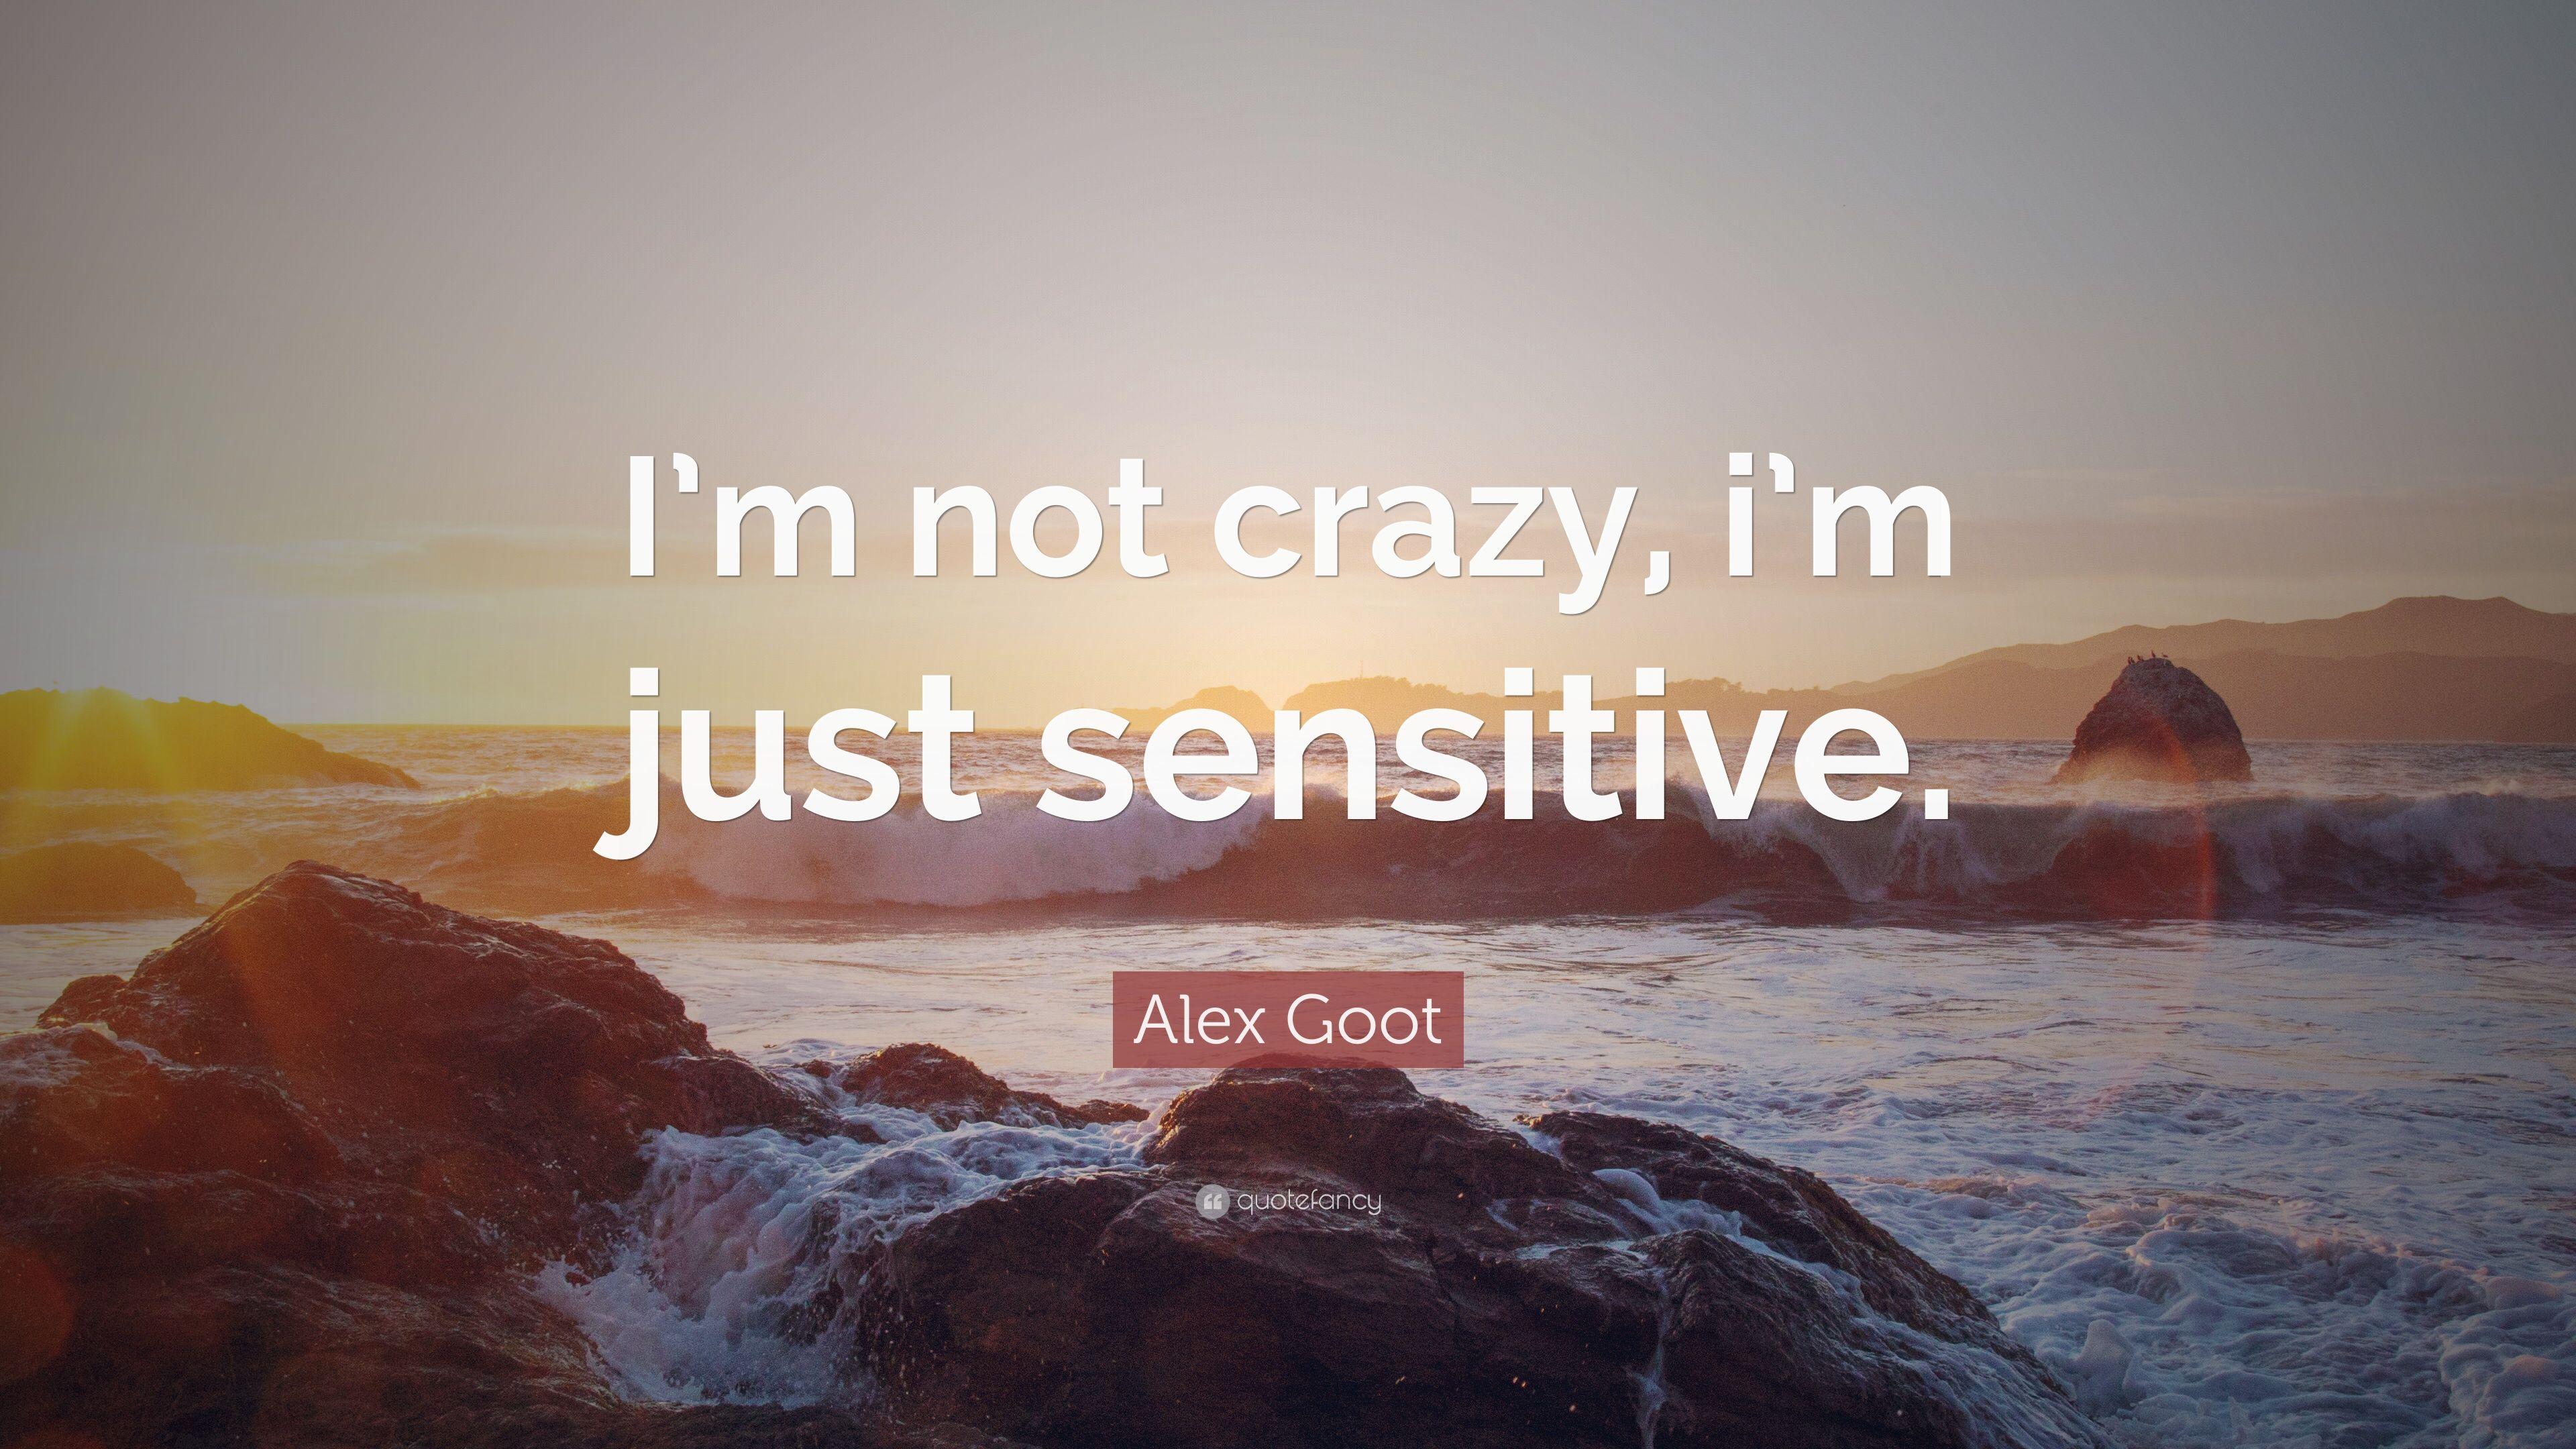 Alex Goot Quote: "I'm not crazy, i'm just sensitive. 